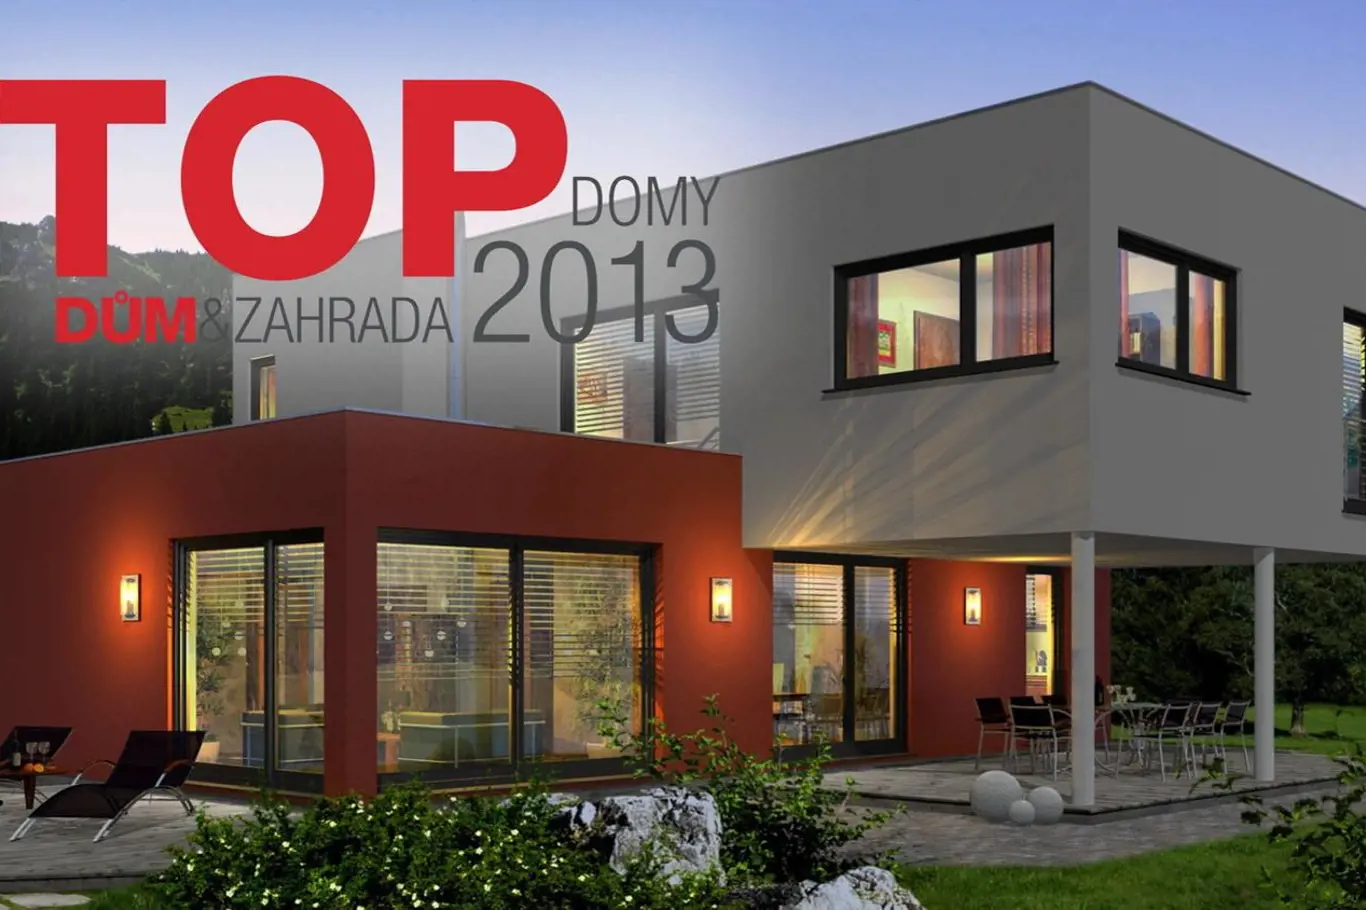 Top Domy 2013